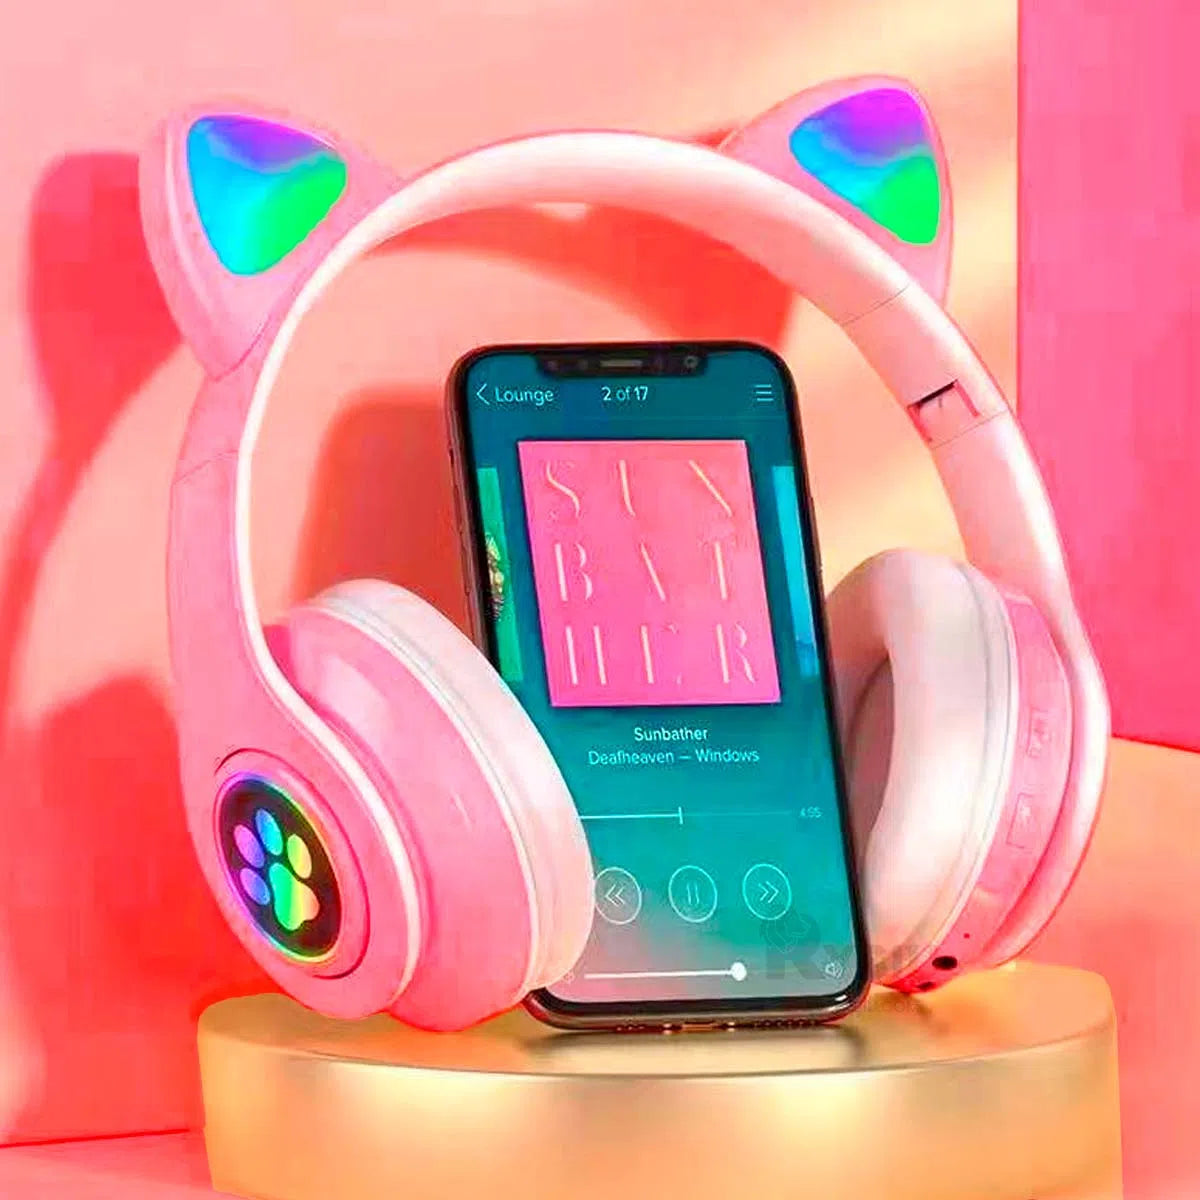 Audífonos RGB Cat Headphone para adolescentes y niños